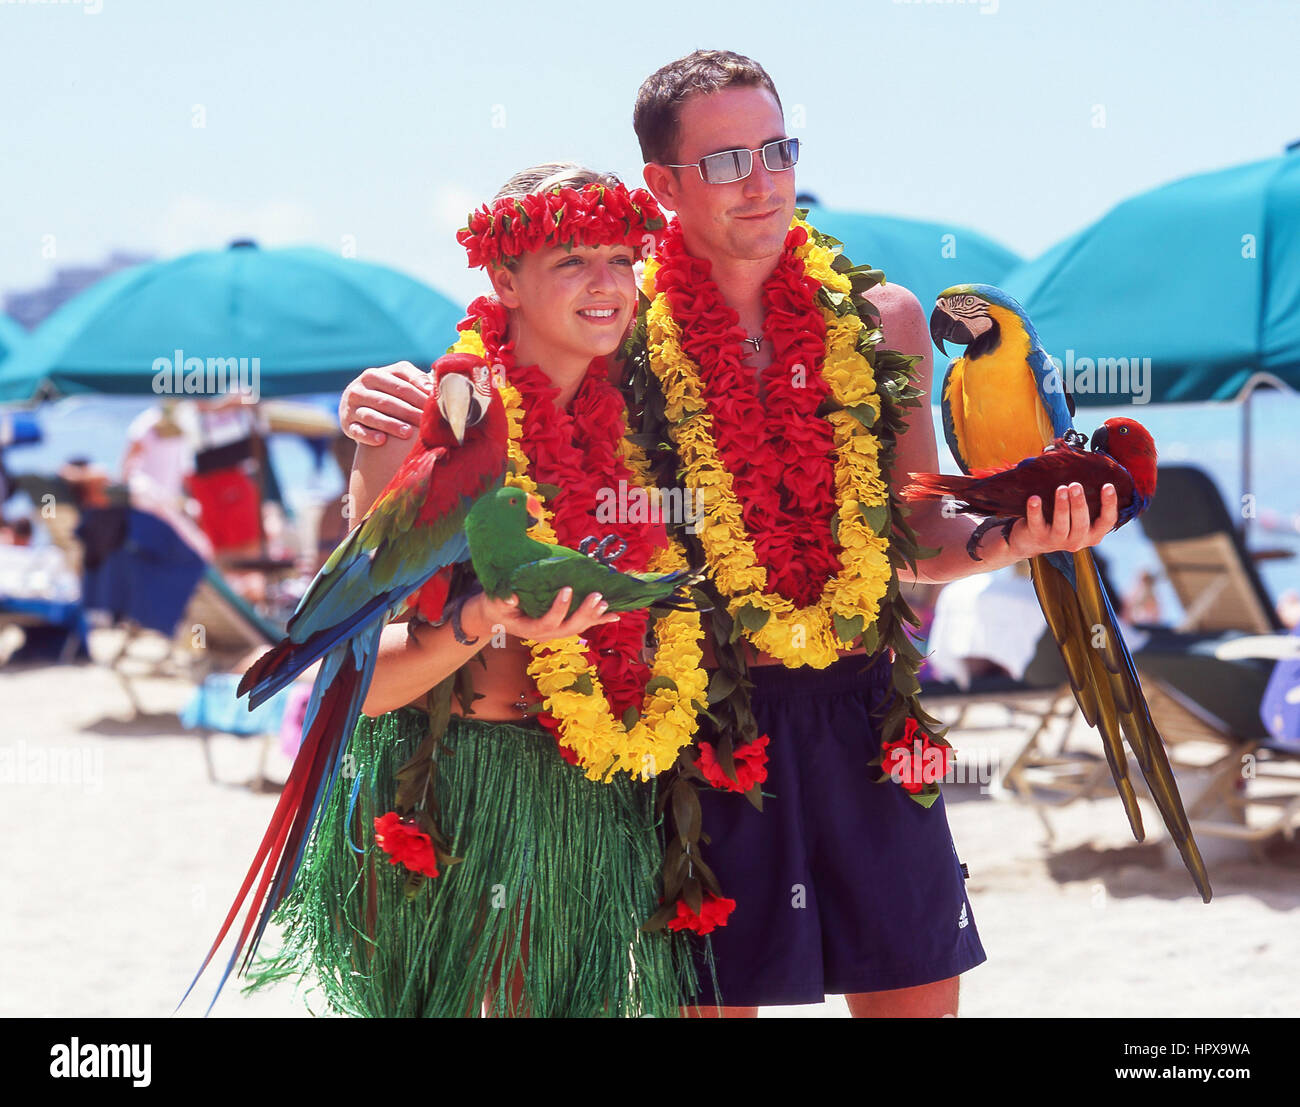 Par posando para fotografías con loros guacamayos, la playa de Waikiki, Honolulu, Oahu, Hawaii, Estados Unidos de América Foto de stock